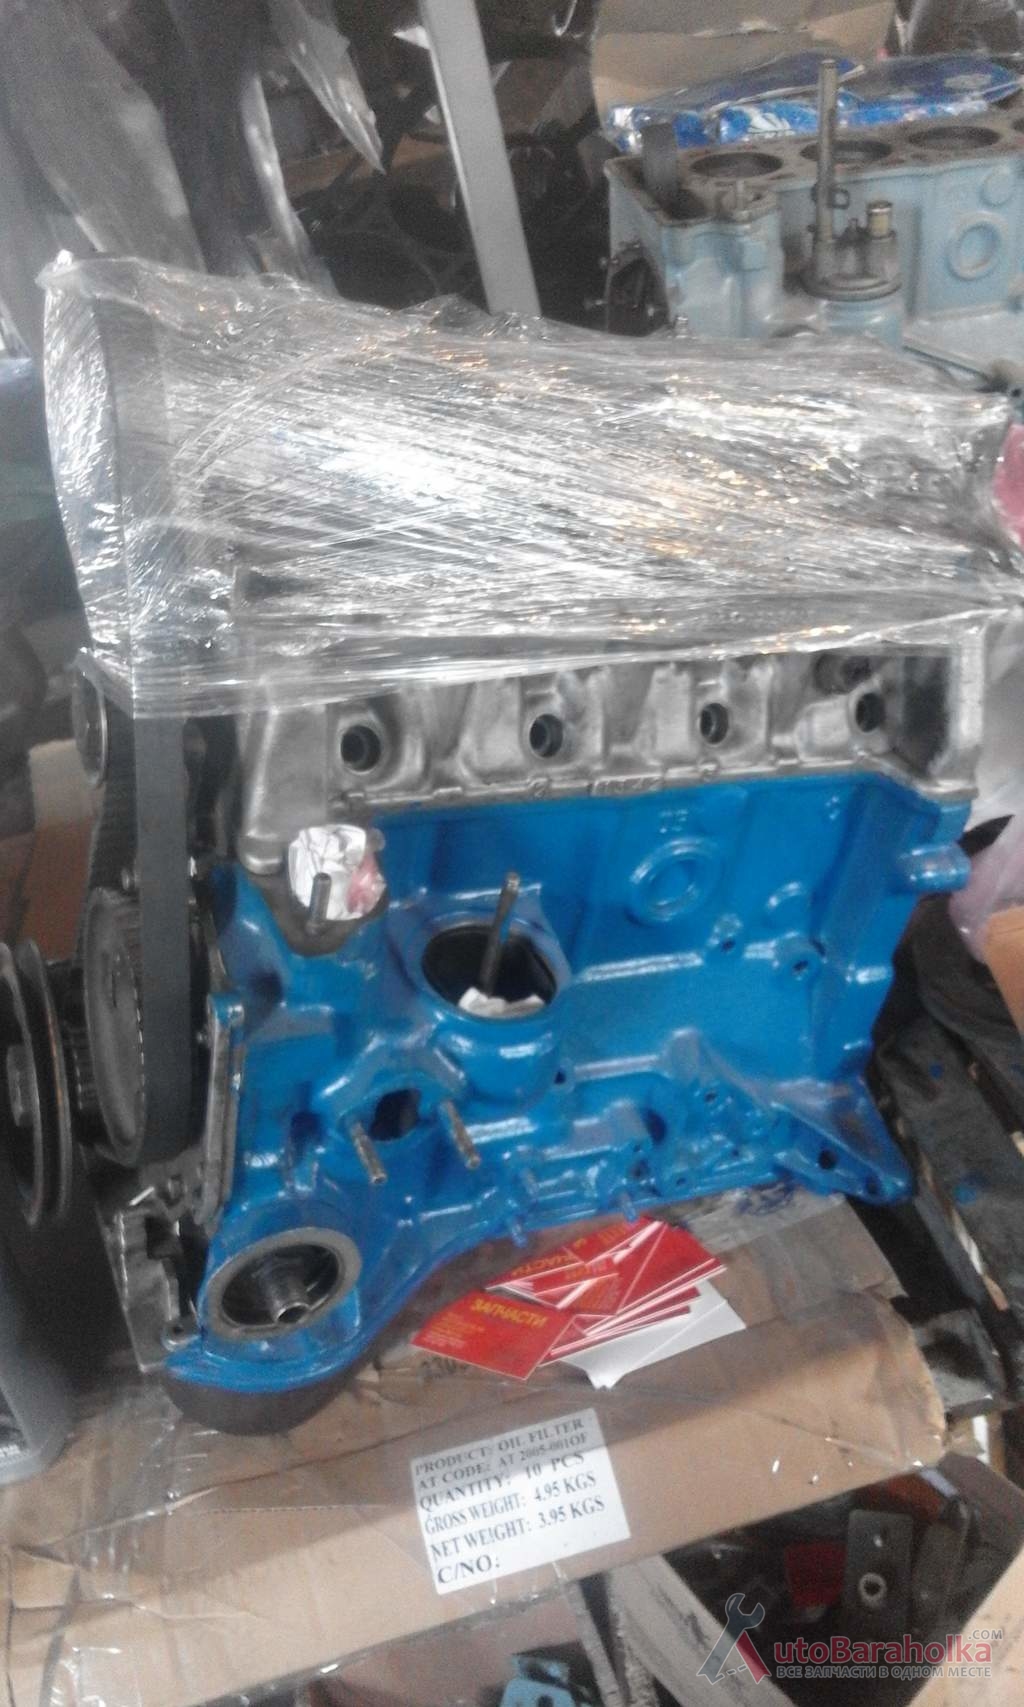 Продам Двигатель ВАЗ 2105 с экспортных машин после кап ремонта, все детали оригинальные. Гарантия на обкатку Харьков 